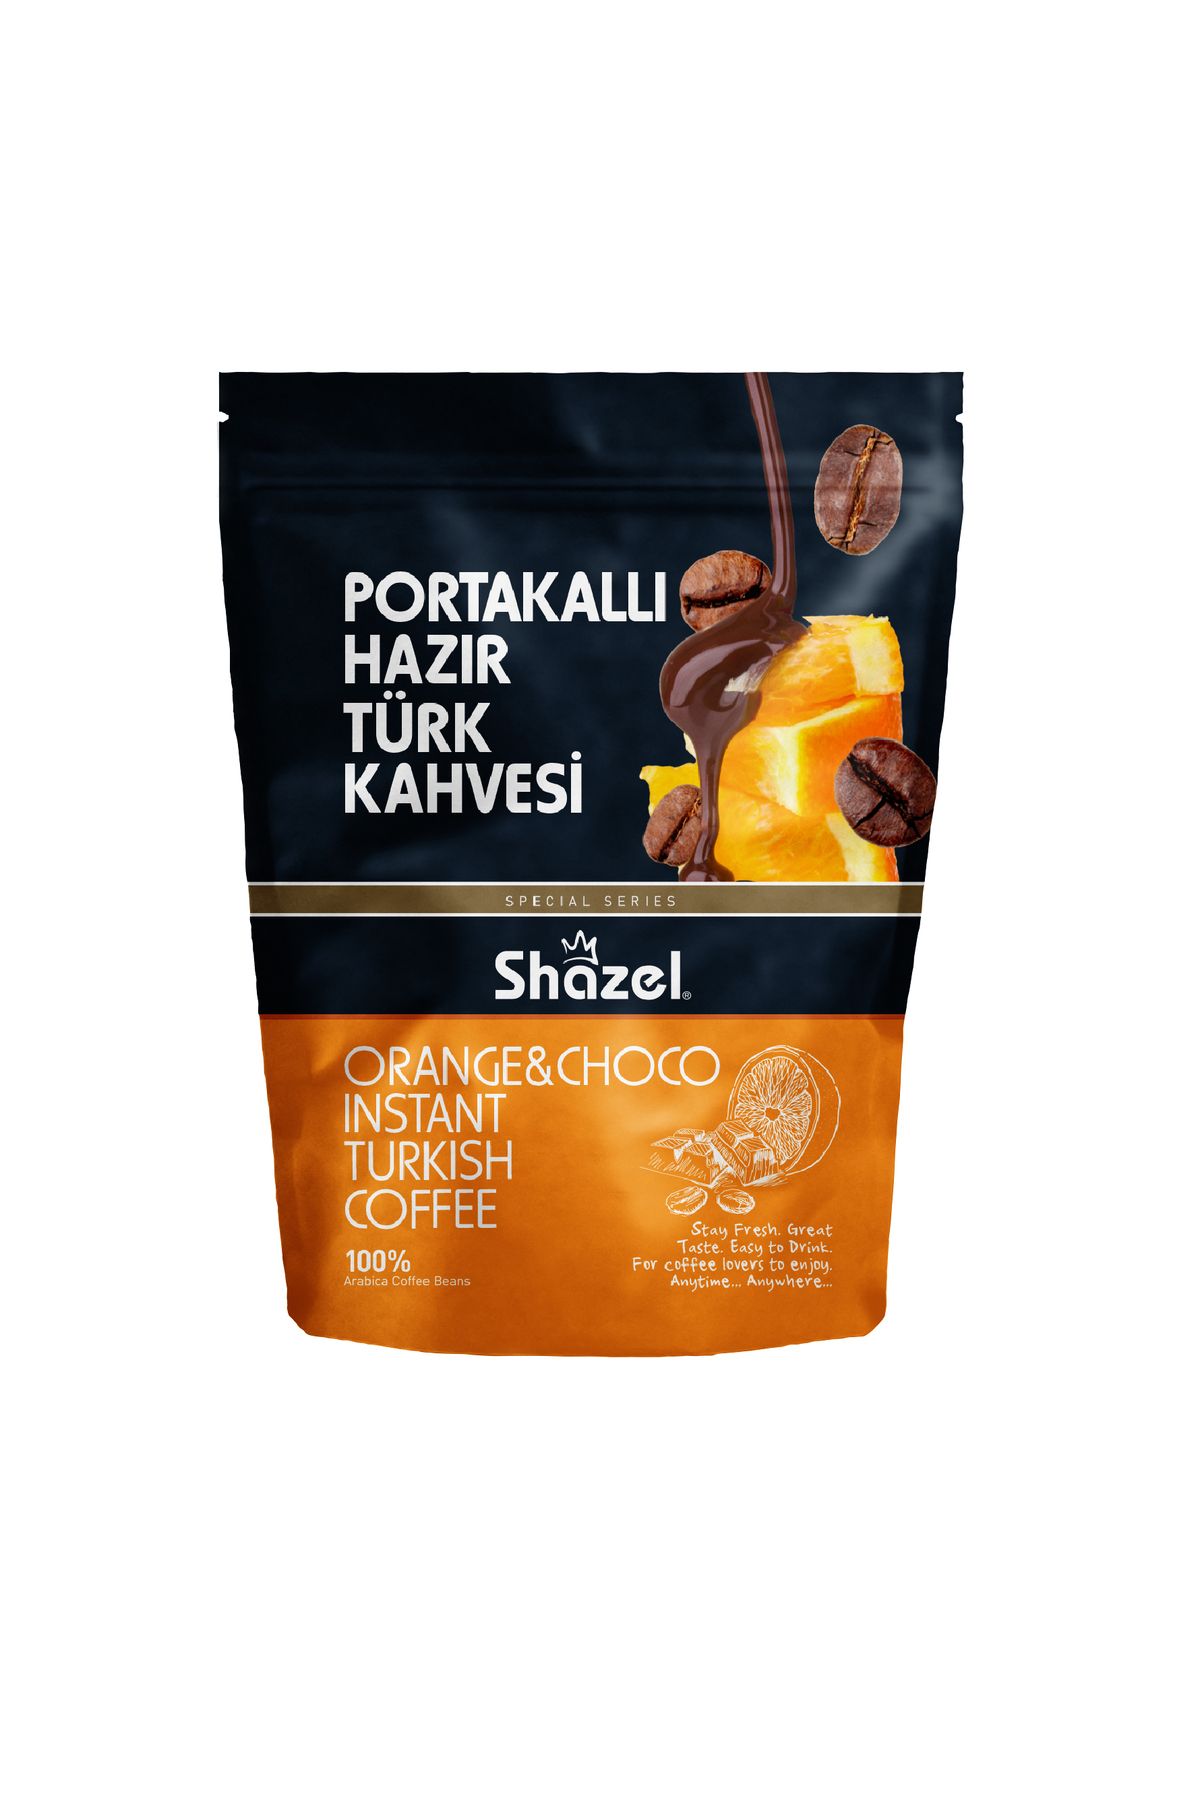 Shazel Portakallı Hazır Türk Kahvesi 200 G X 3 Adet (AROMALI)